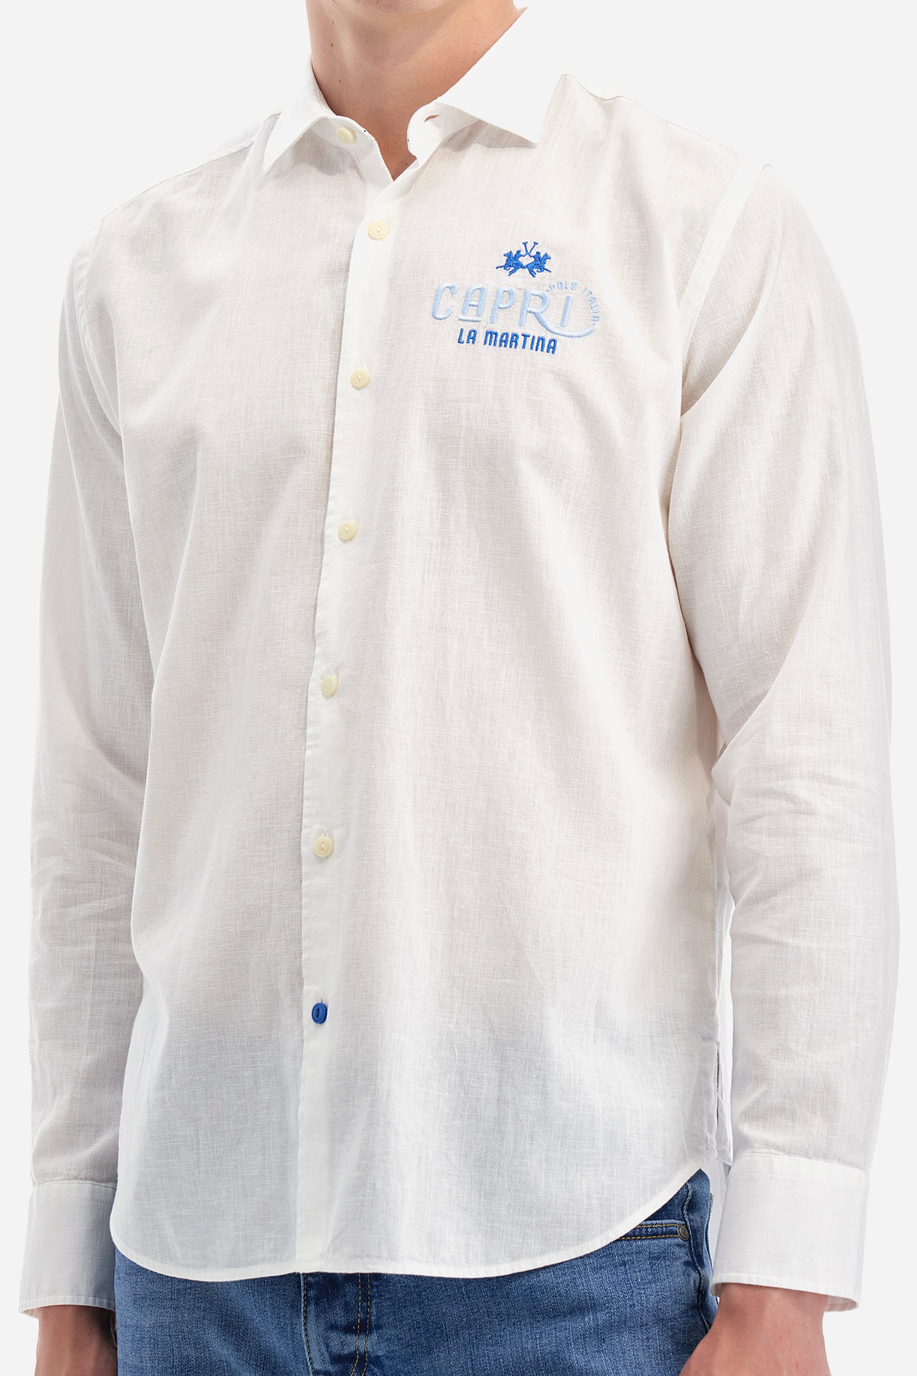 Hemd aus Baumwolle und Leinen - Innocent - Hemden | La Martina - Official Online Shop